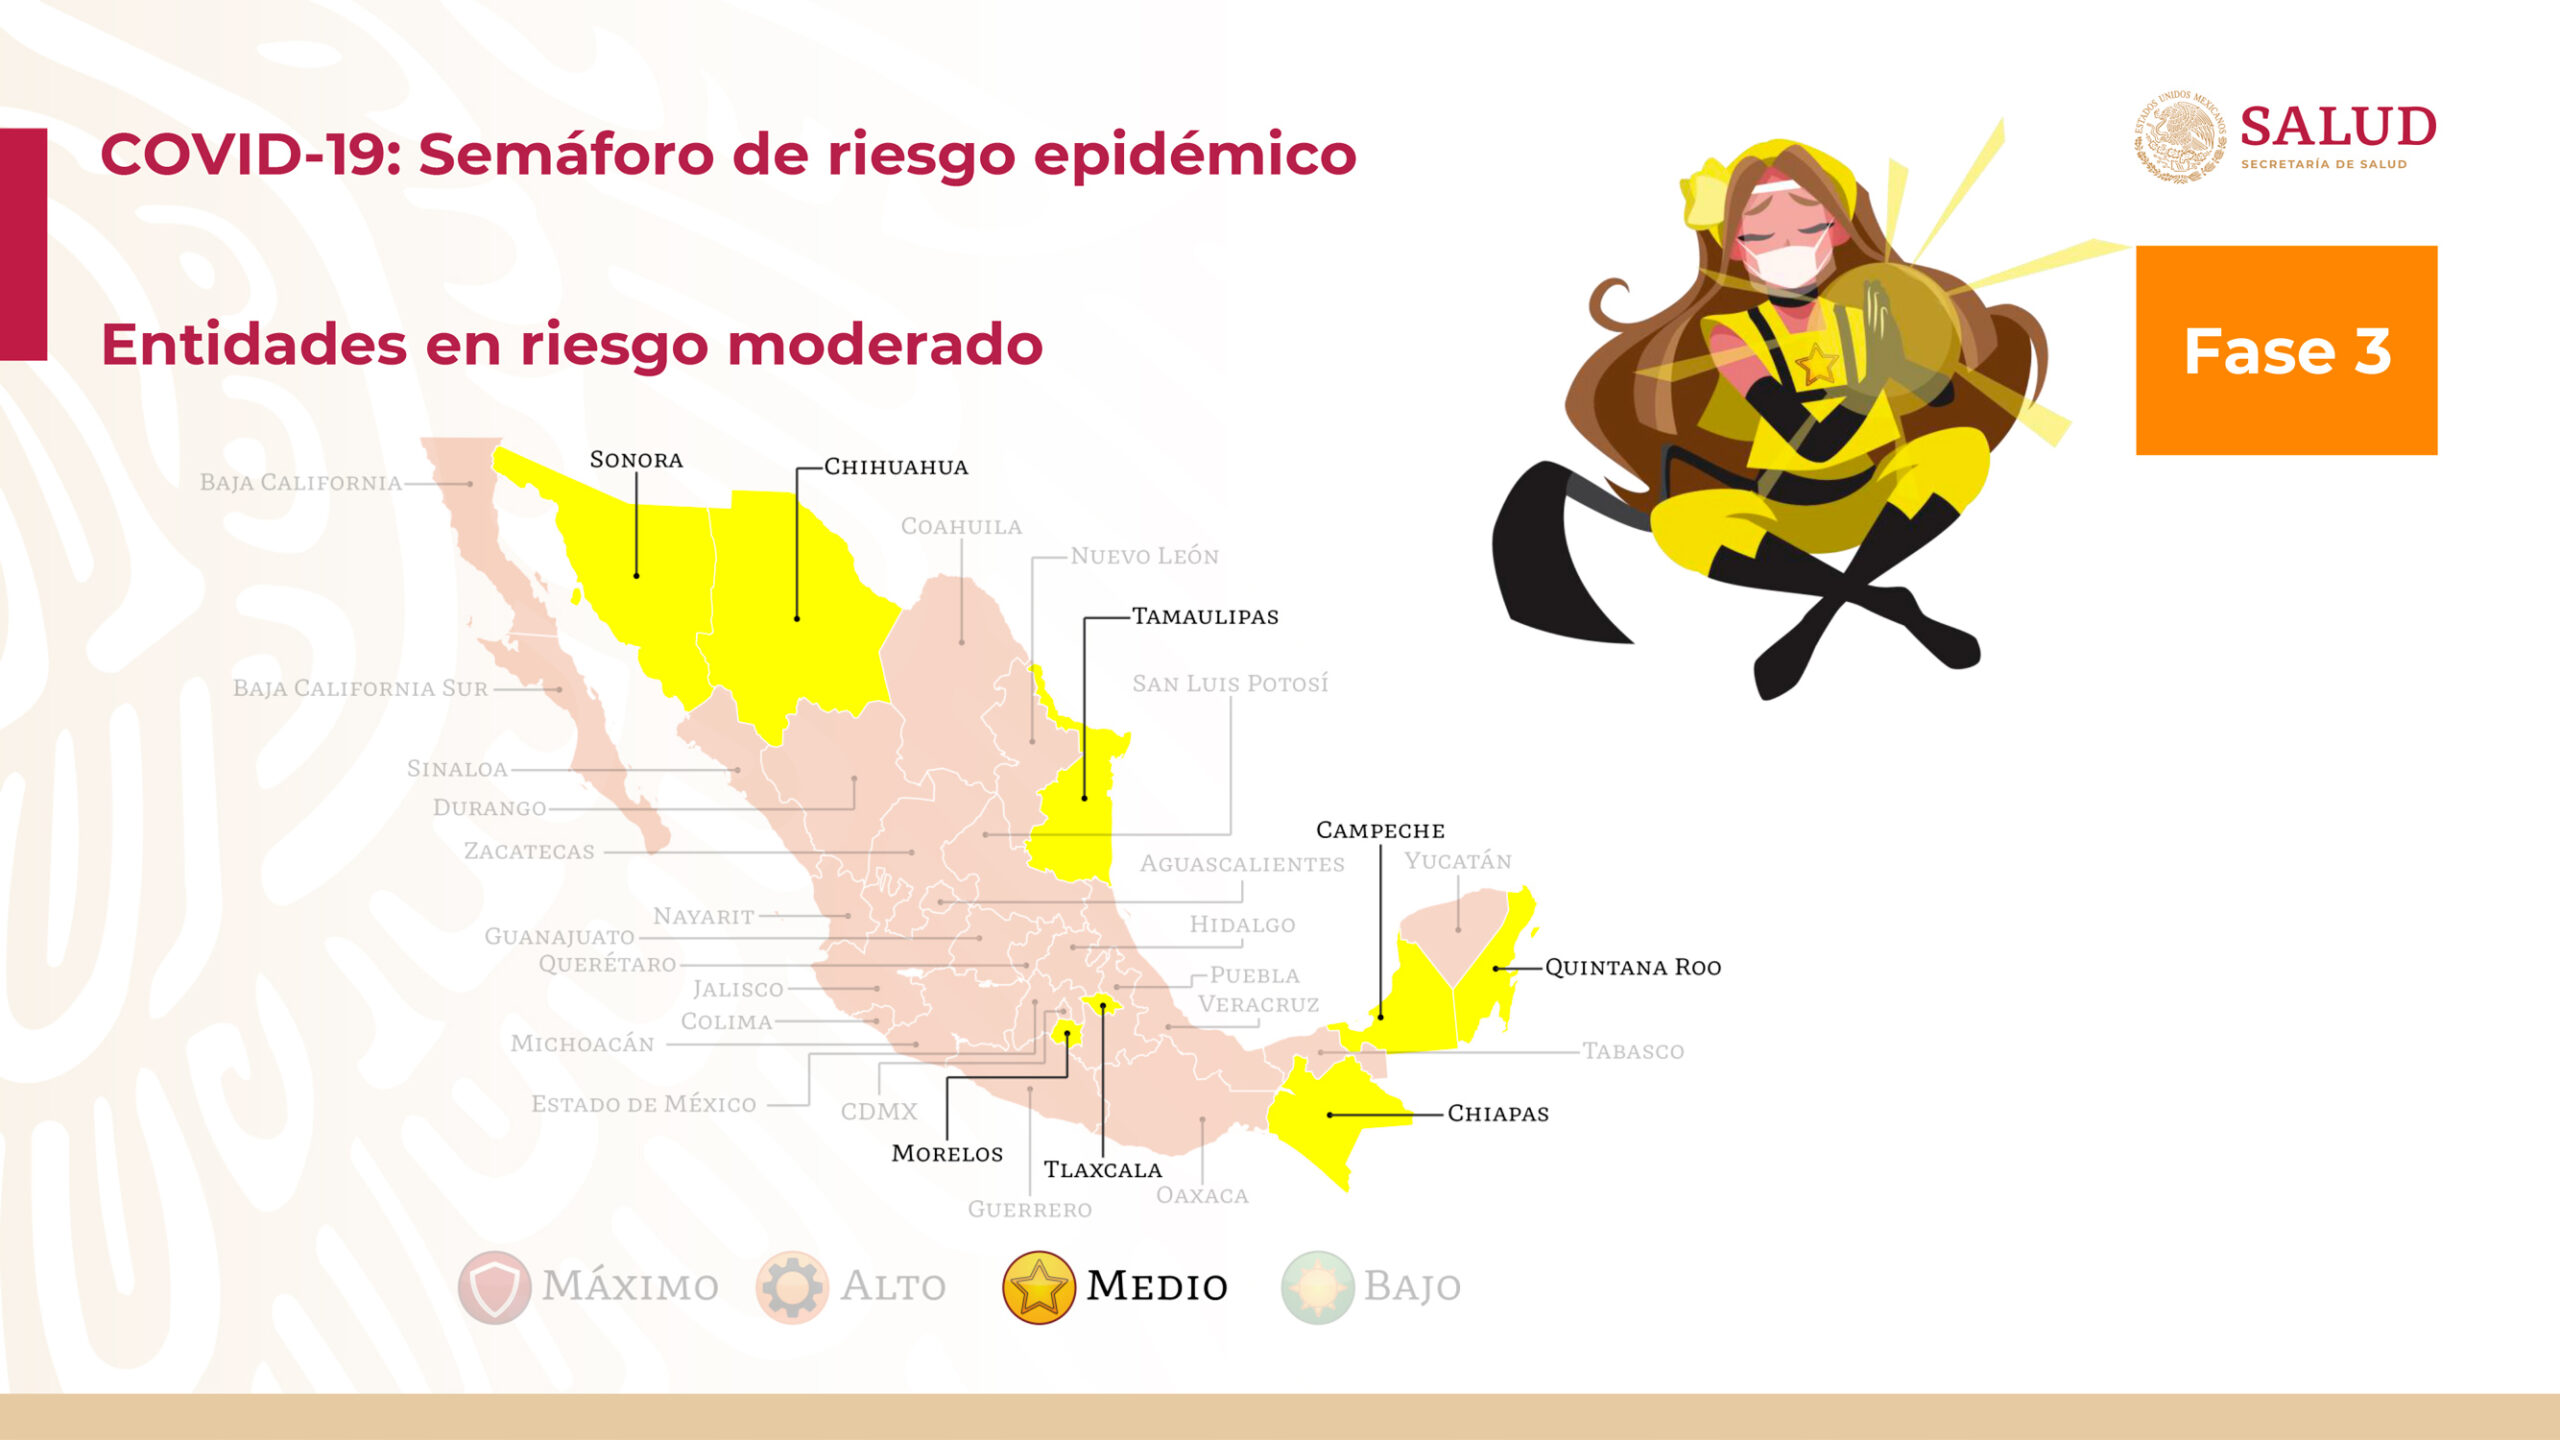 Los estados de México que están en semáforo amarillo